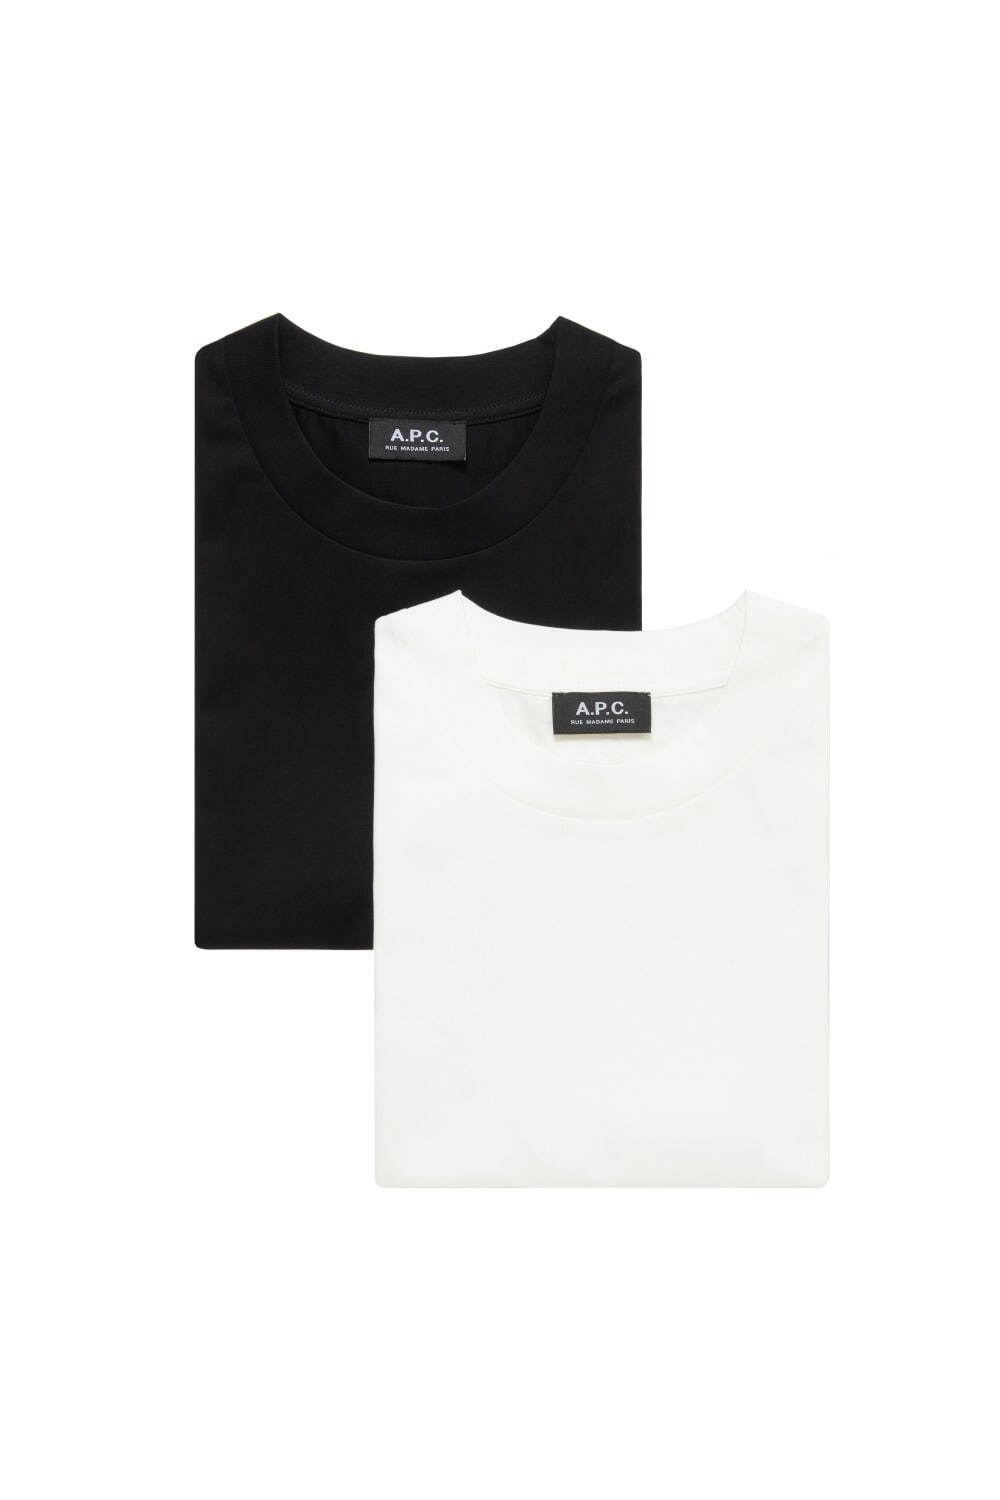 「パックTシャツ」2枚組 18,700円